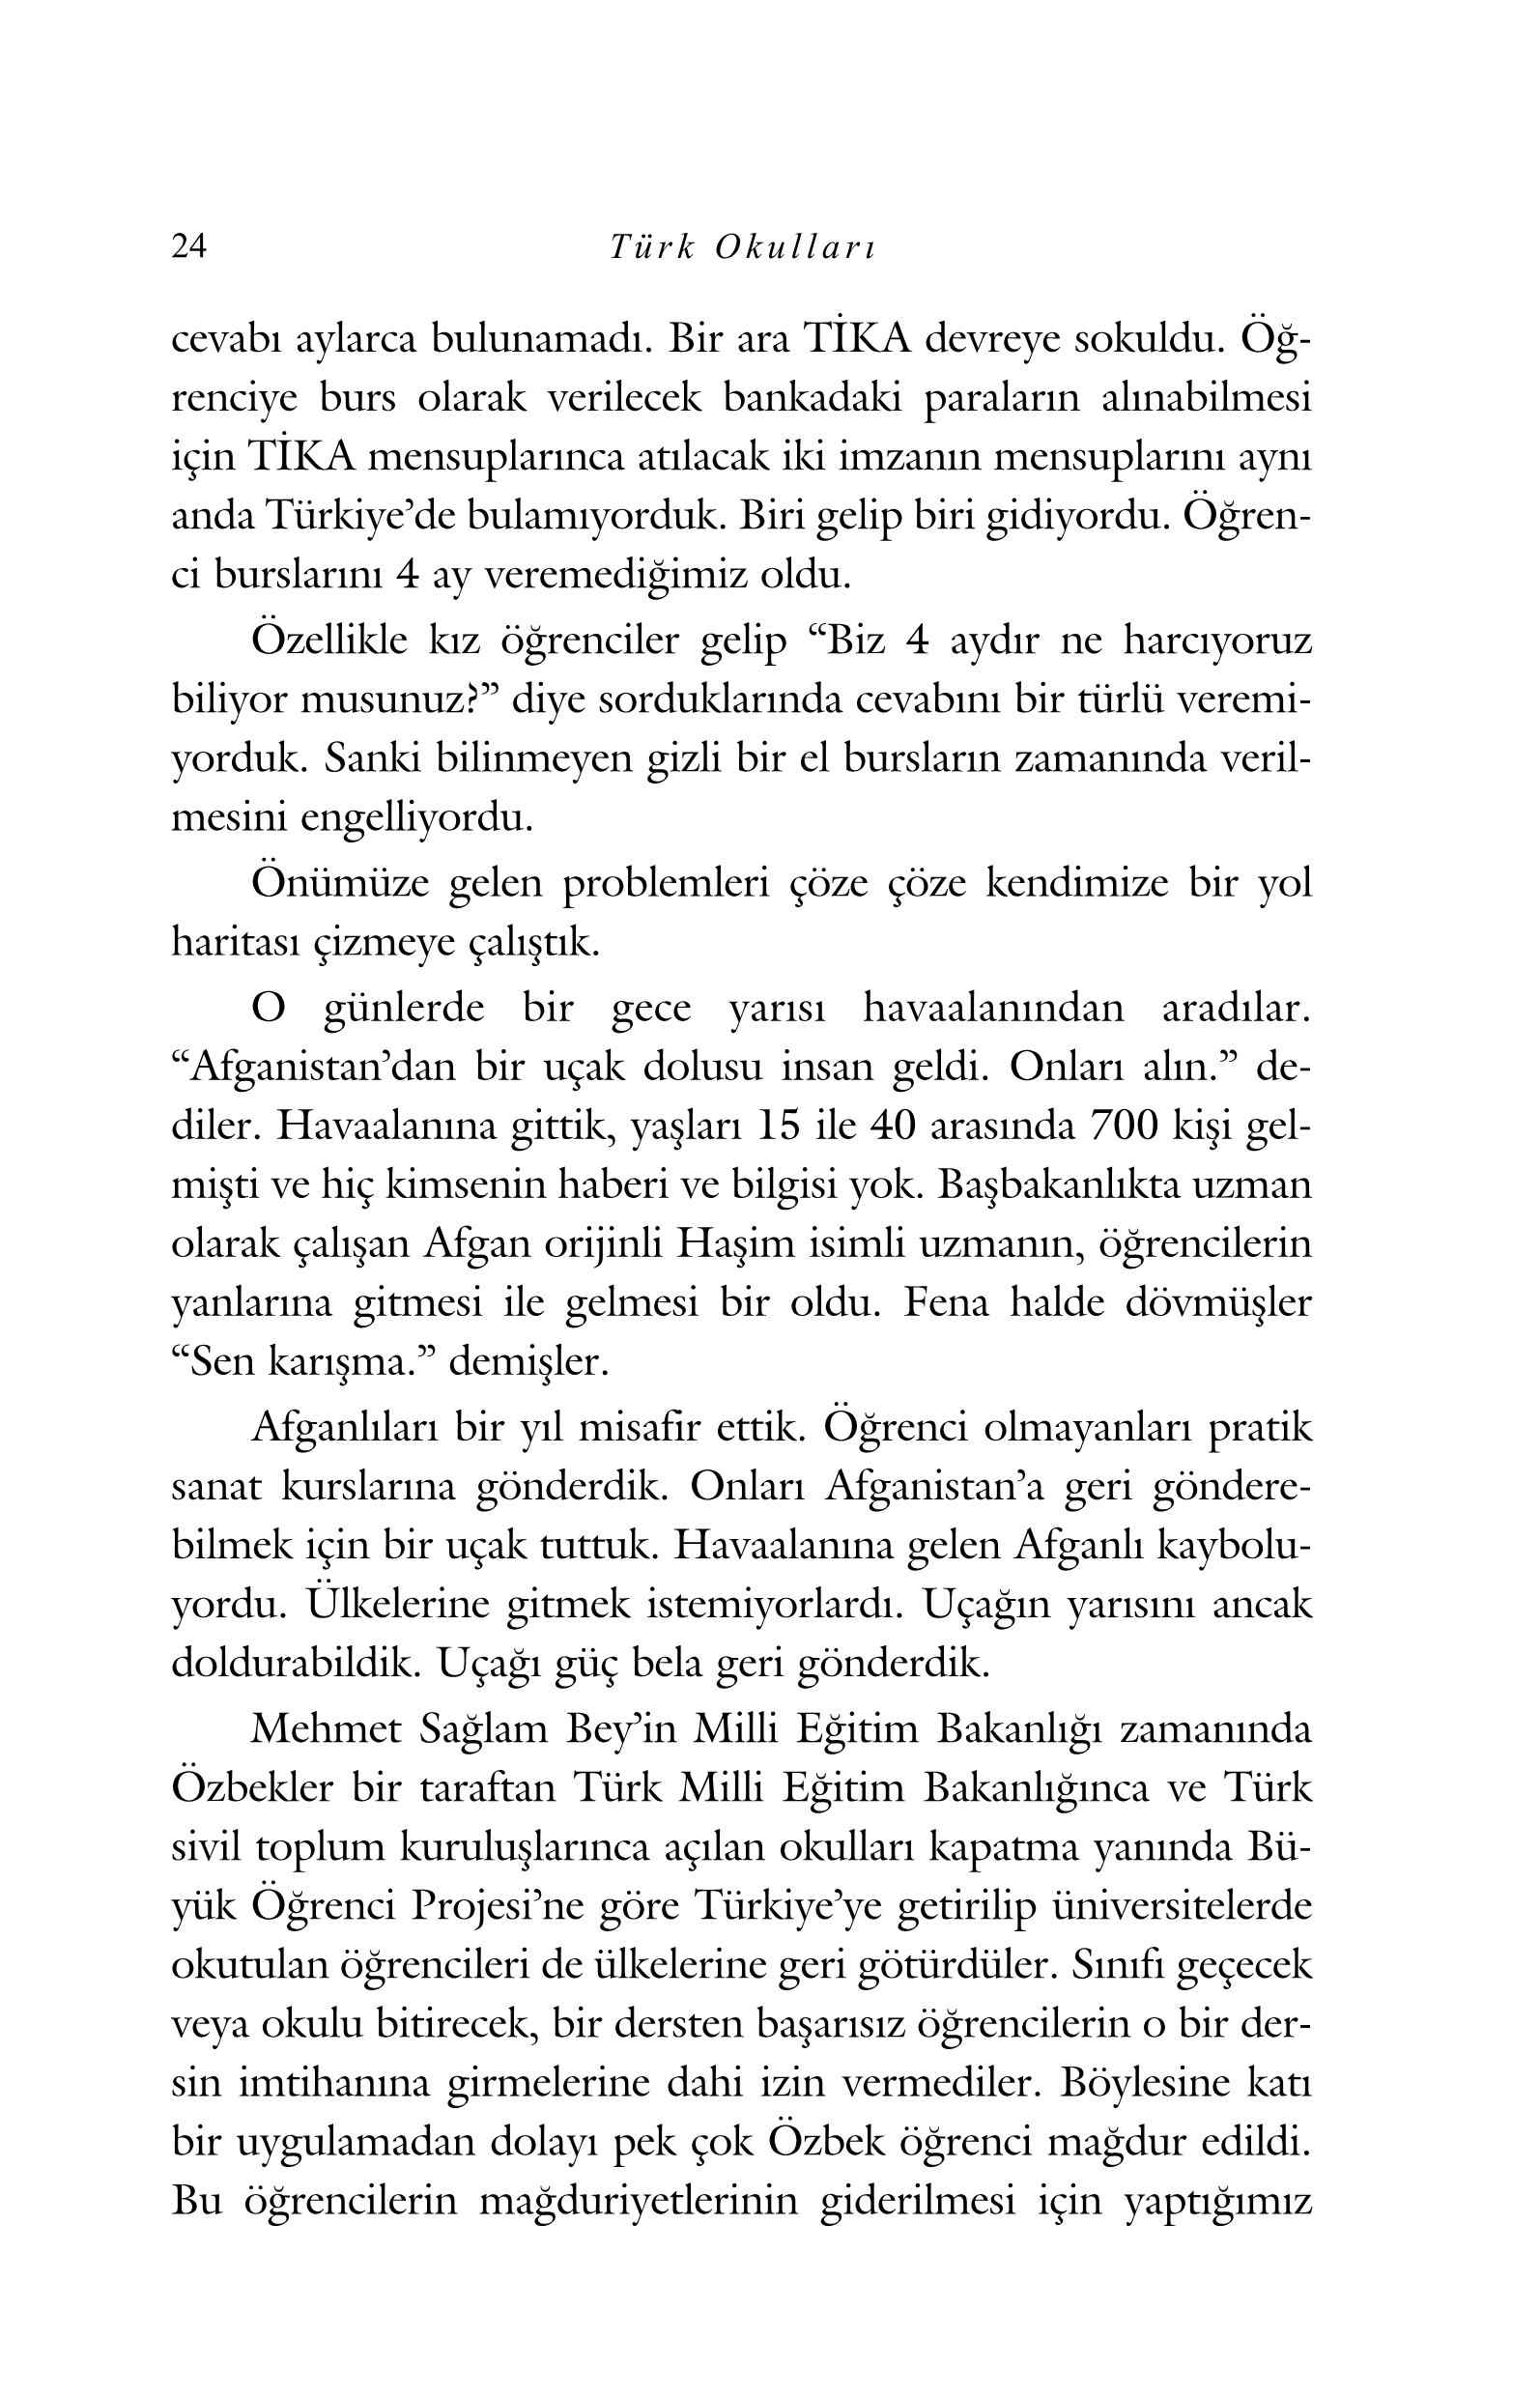 Yurt Disi Hatiralari- Aysal Aytac - Izlenimler - Yurt Disindaki Turk Okullari - Sulh Adaciklari - KaynakYayinlari.pdf, 153-Sayfa 